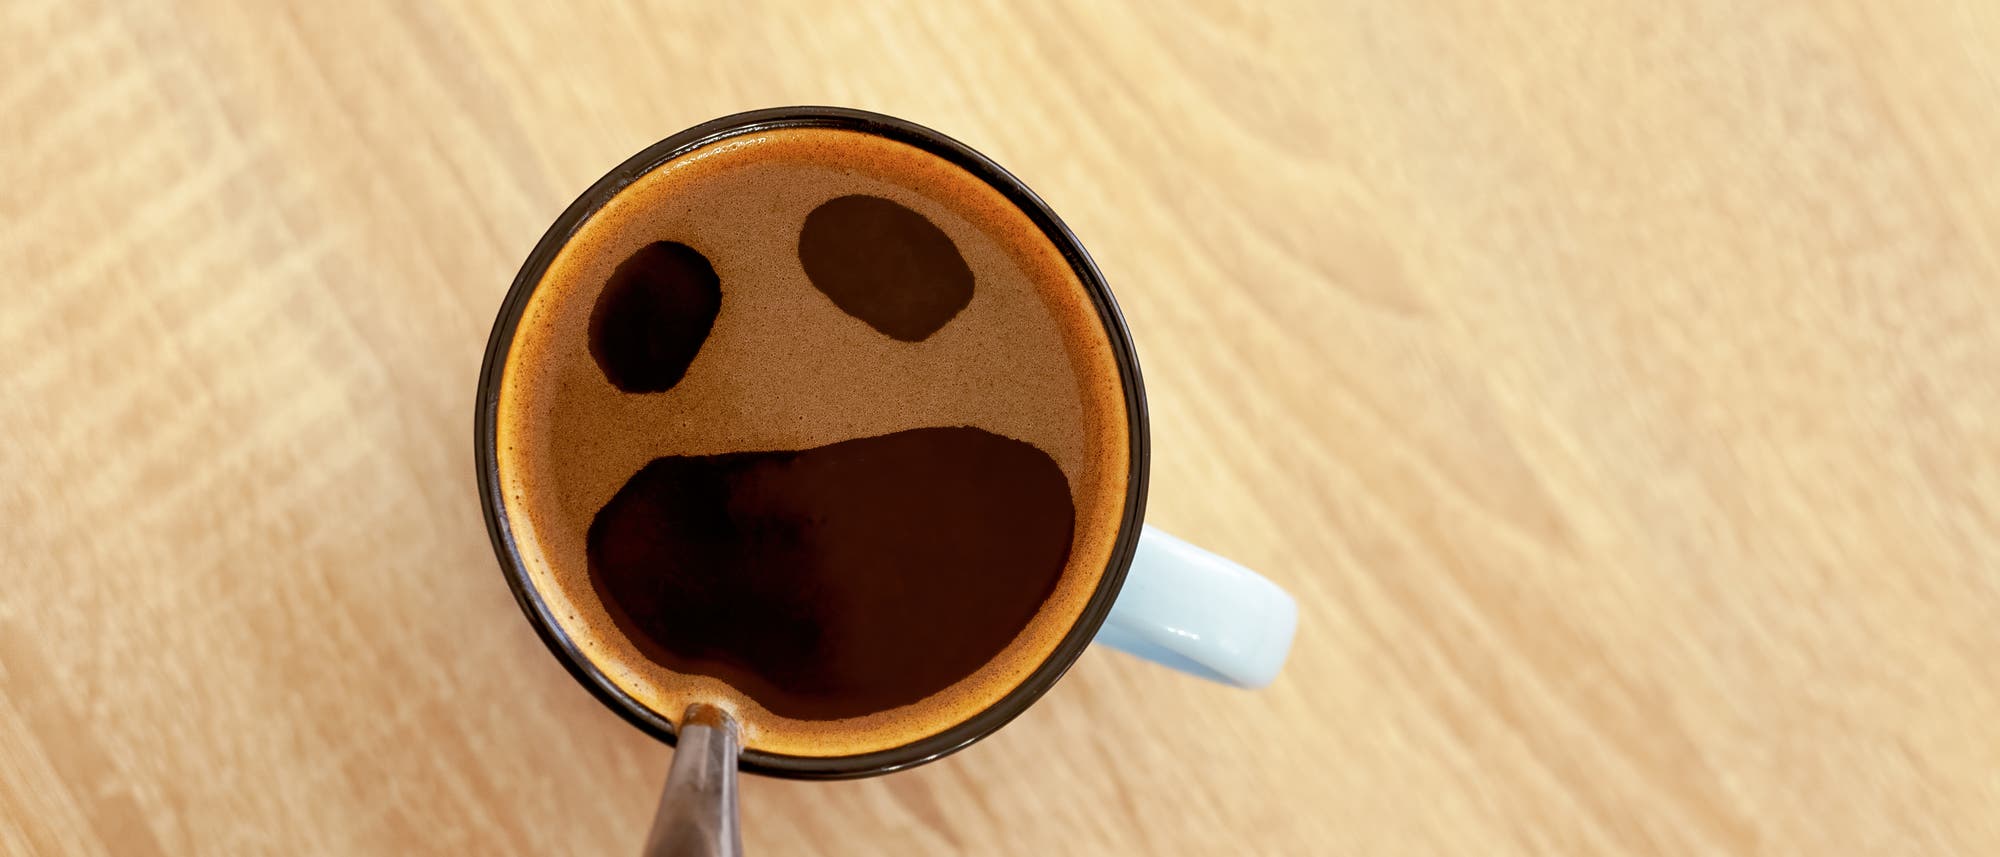 Blick von oben auf eine Kaffeetasse; der Schaum hat drei Öffnungen wie zwei Augen und offener Mund.